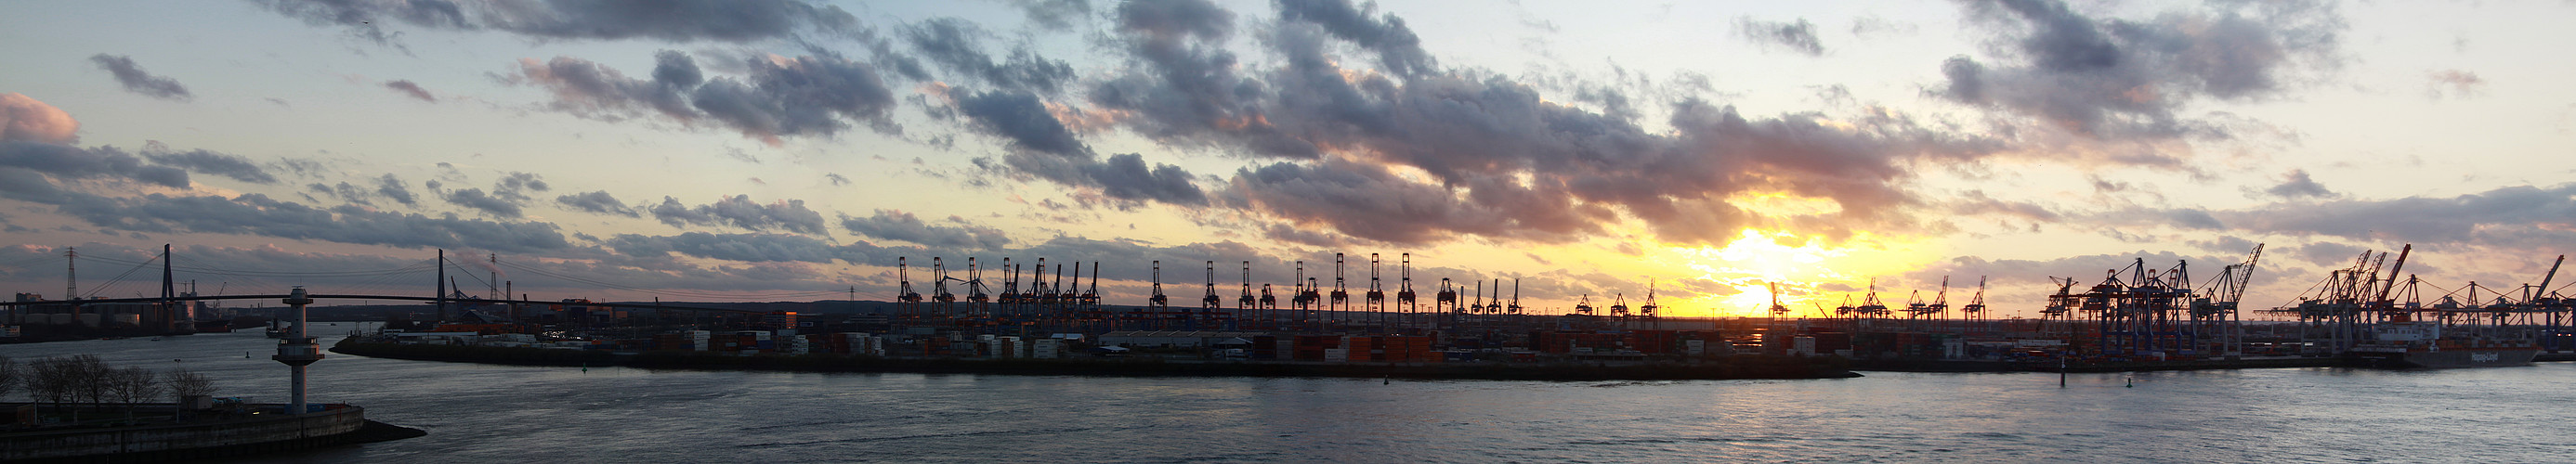 Sonnenuntergang im Haburger Hafen